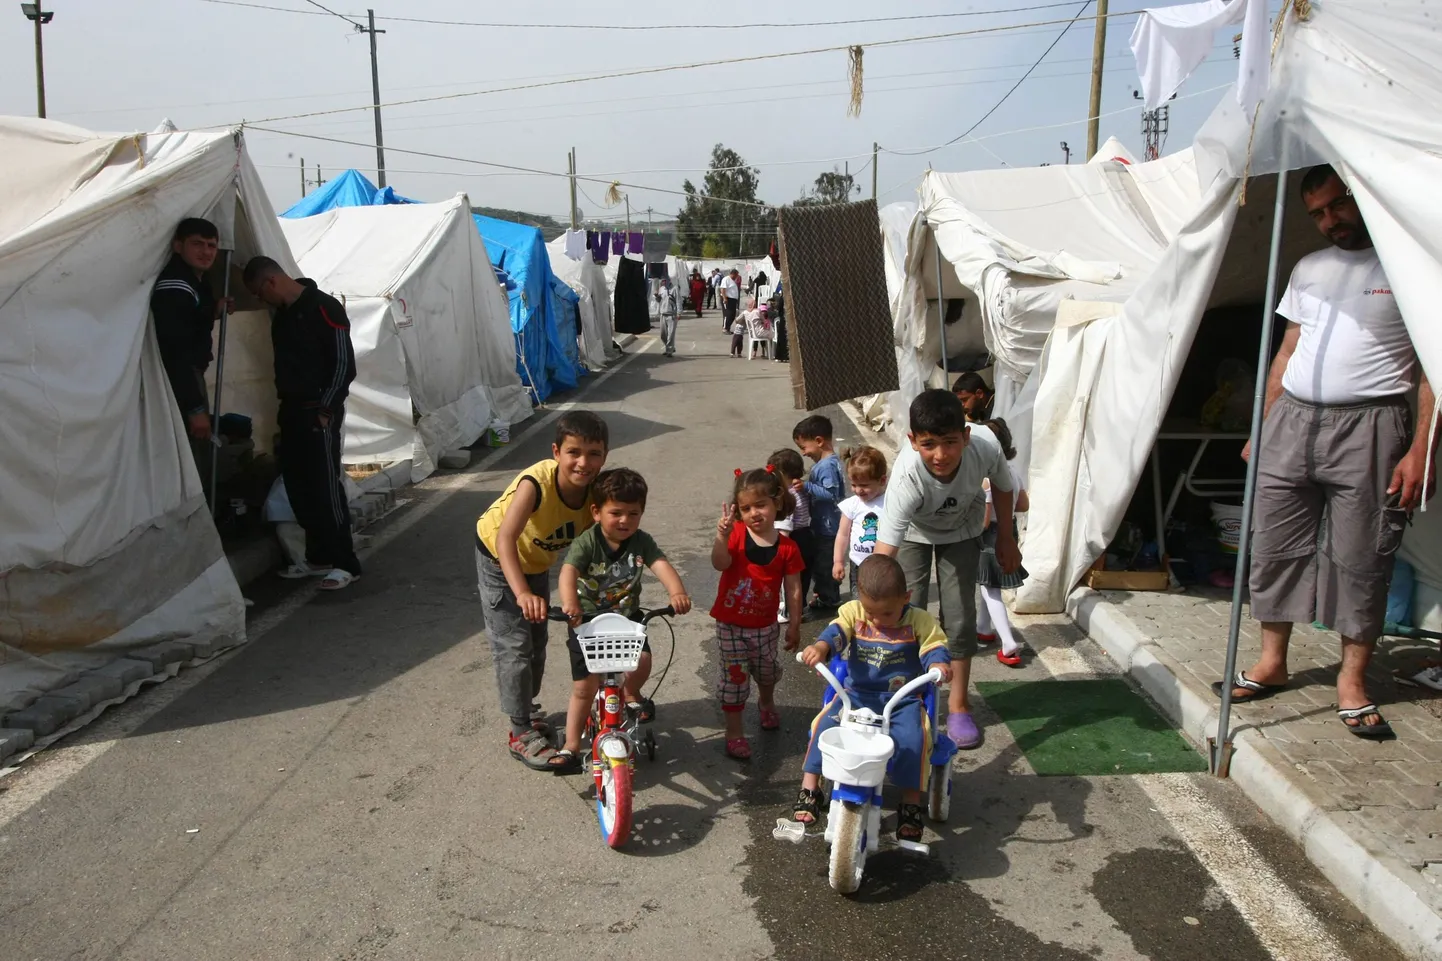 Väiksed süürlased Punase Risti põgenikelaagris Türgis Boynuyoguni külas.